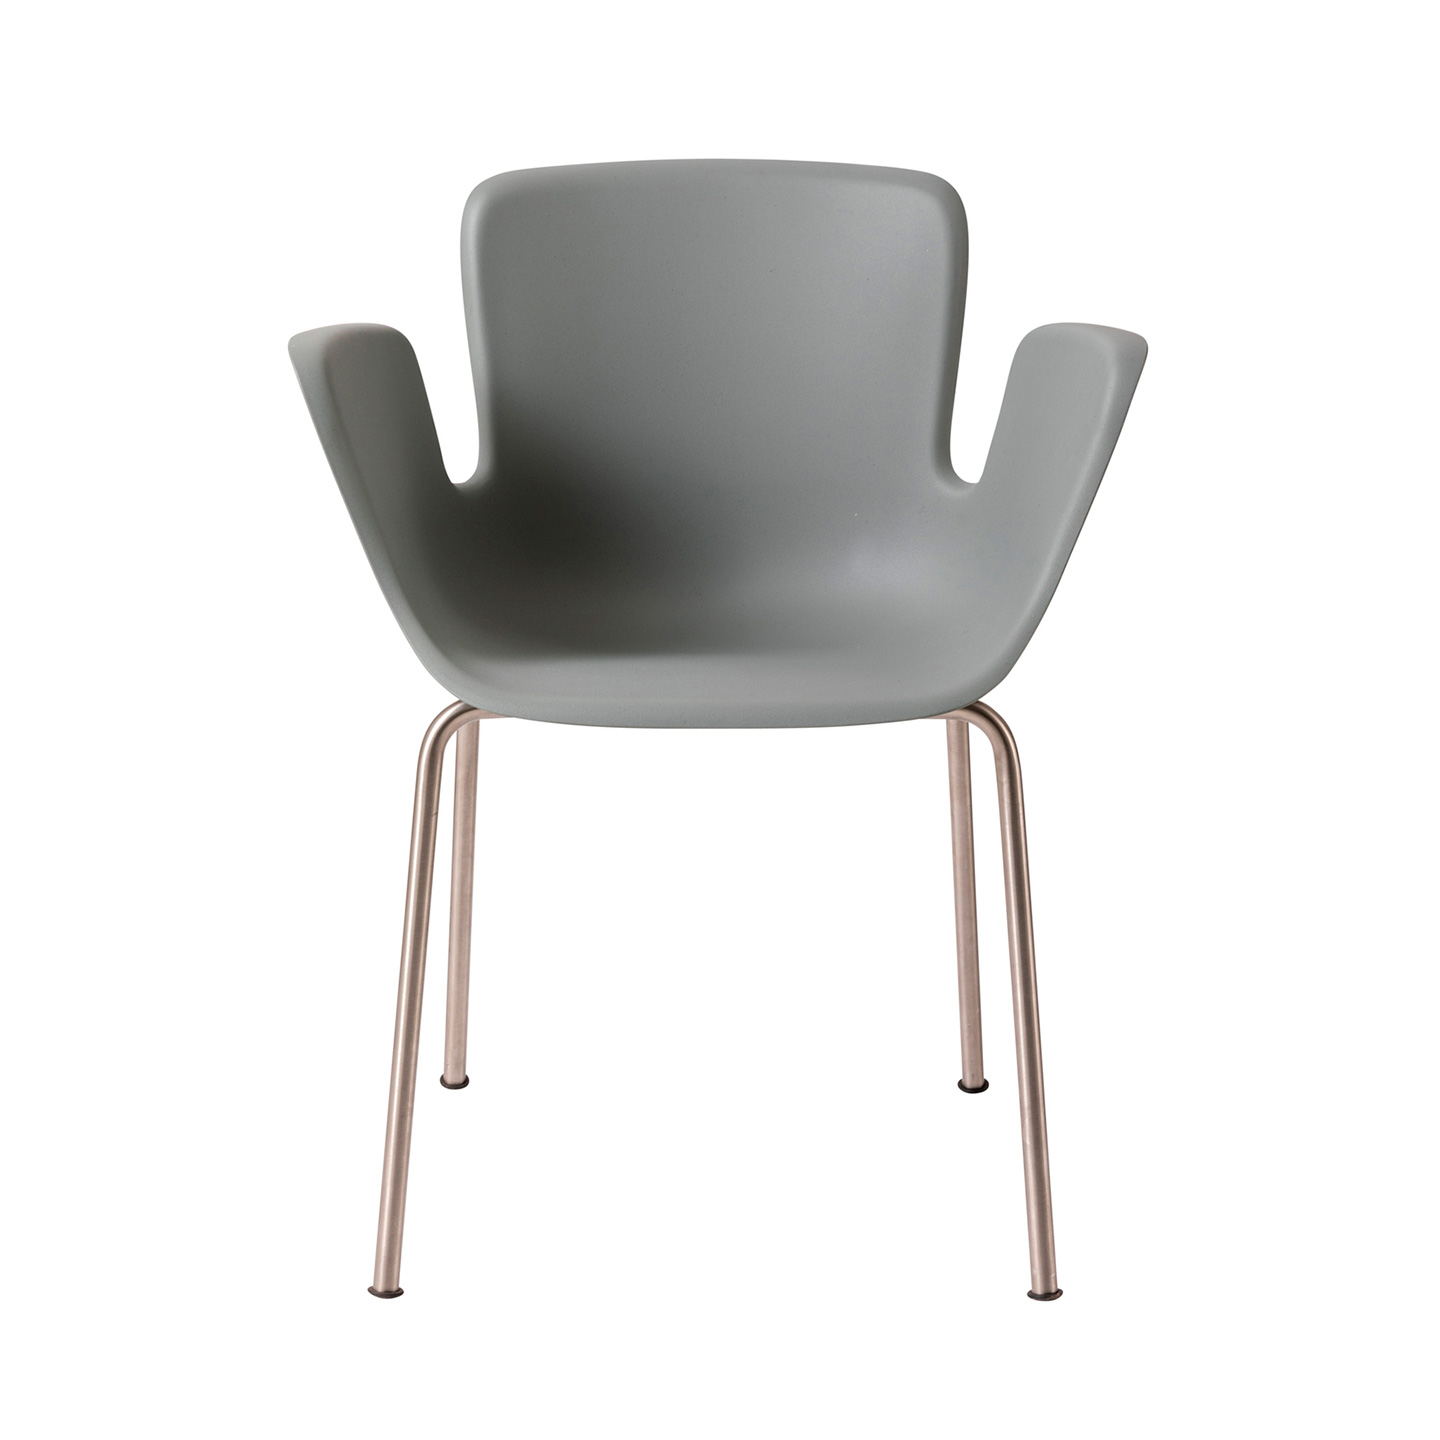 Juli Re-Plastic ist ein vierbeiniger Outdoor-Stuhl aus Edelstahl, dessen Schale aus recyceltem und wiederverwertbarem, glasfaserverstärktem Polypropylen besteht.